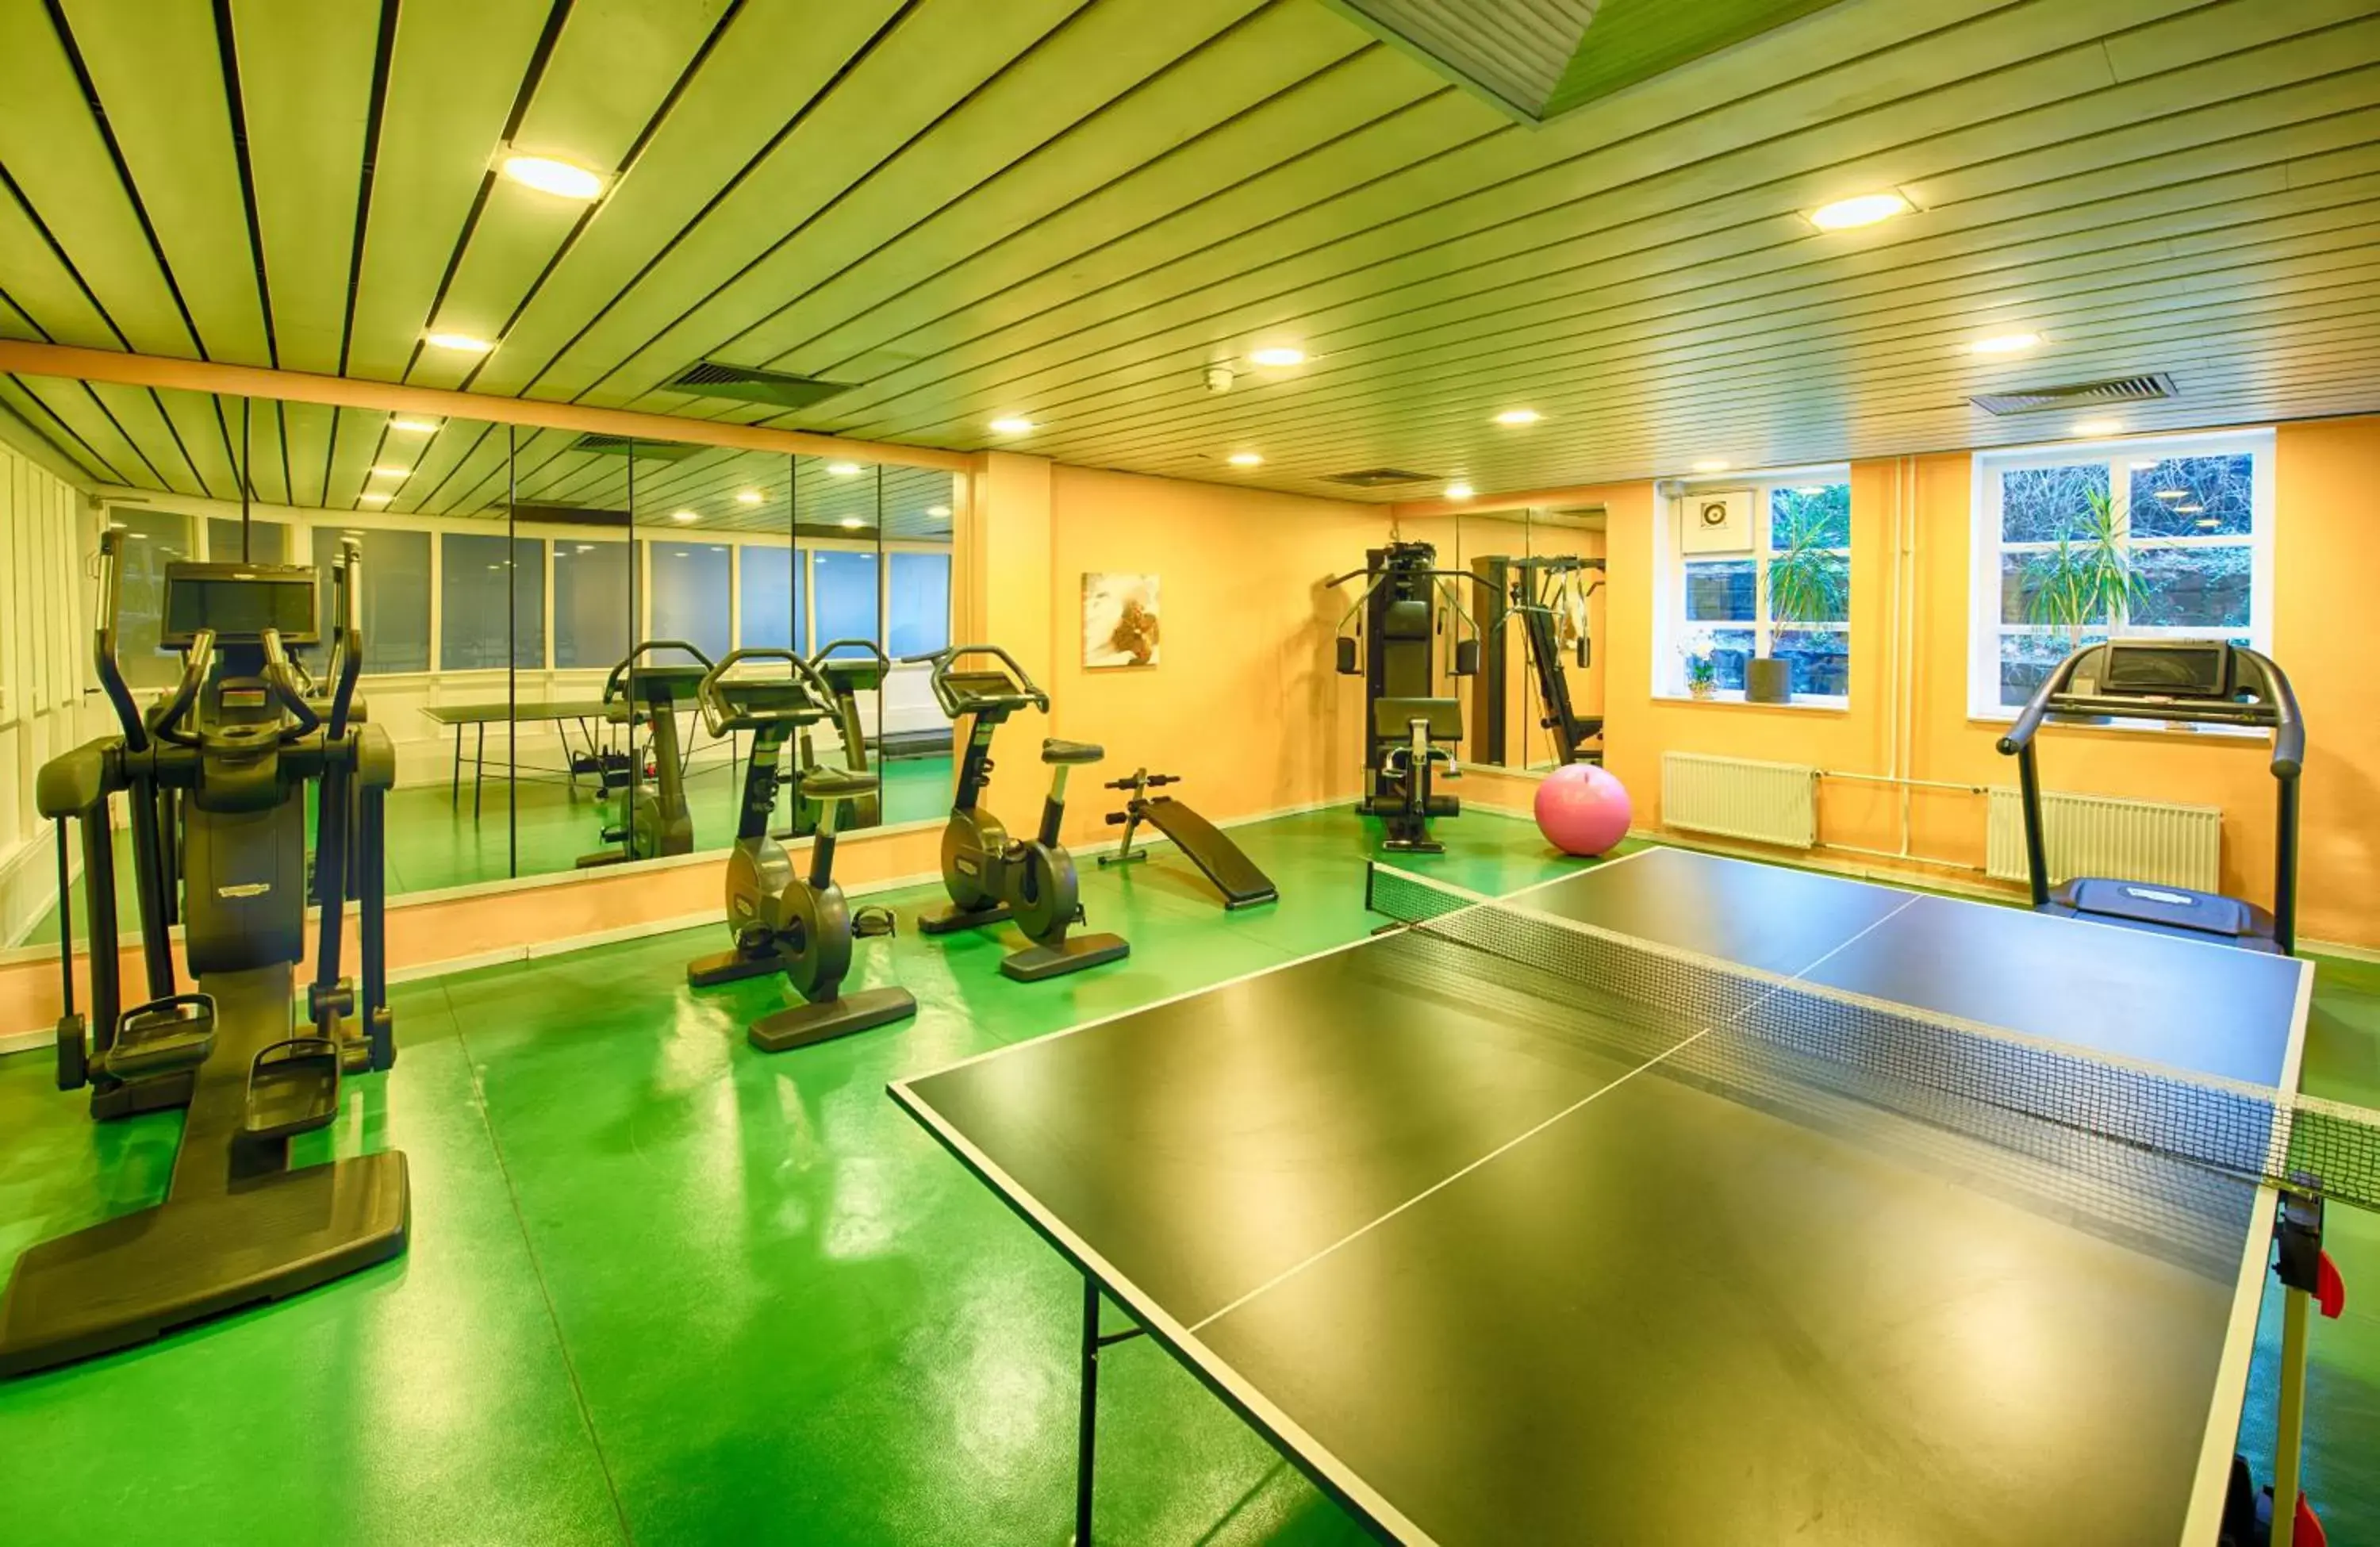 Fitness centre/facilities, Fitness Center/Facilities in Leonardo Hotel Hamburg Stillhorn